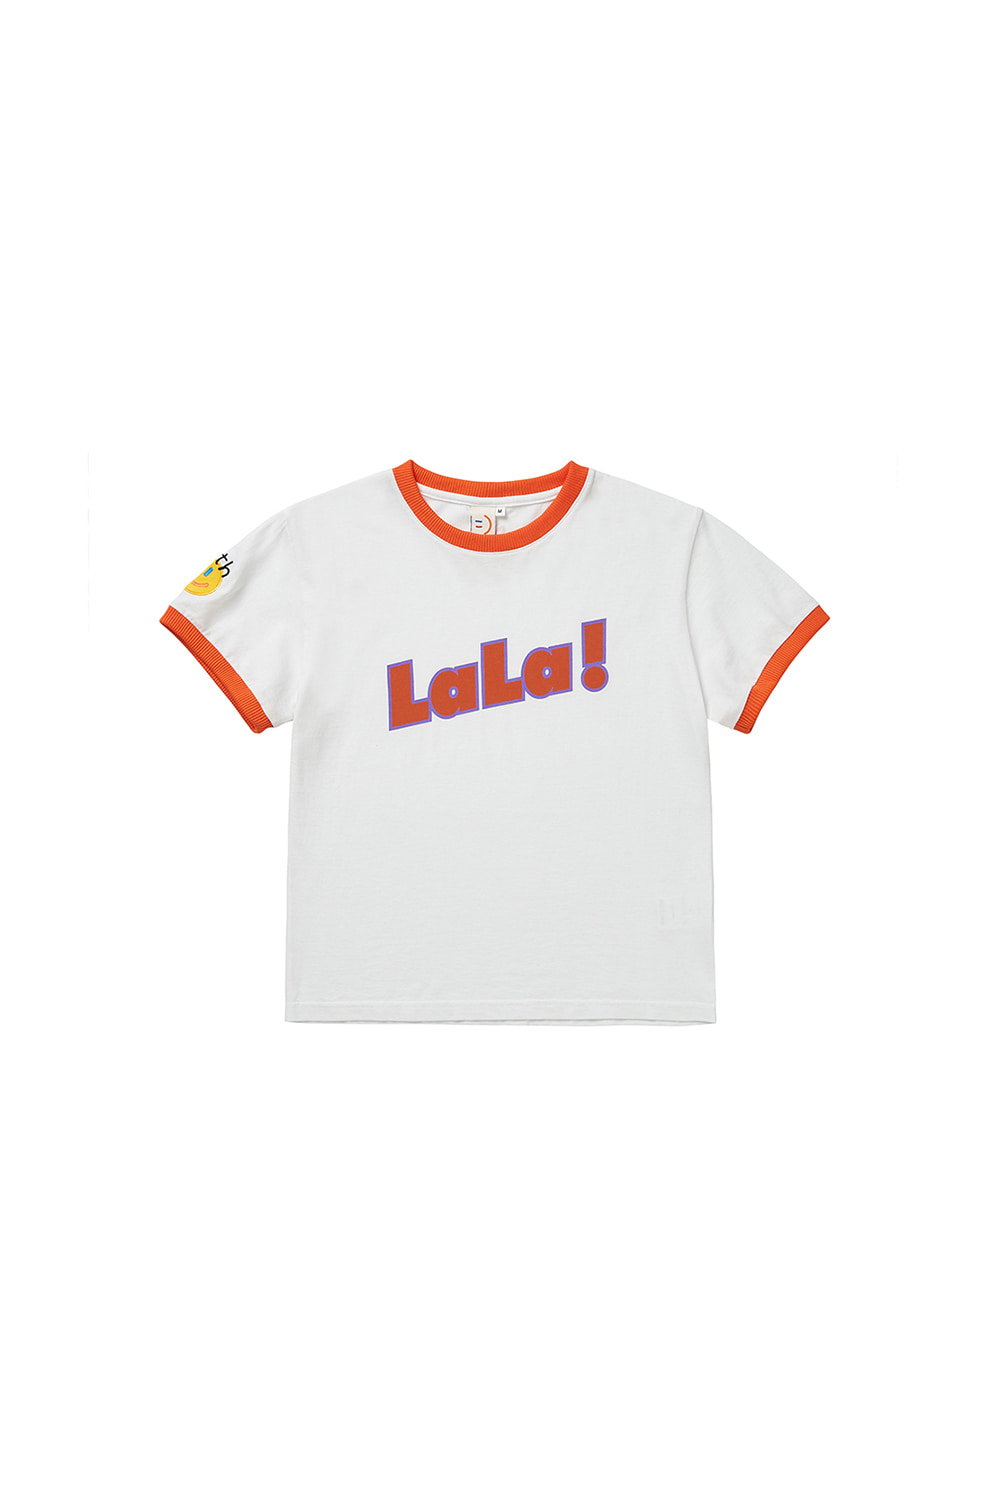 LaLa Twotone T-shirt [Orange]